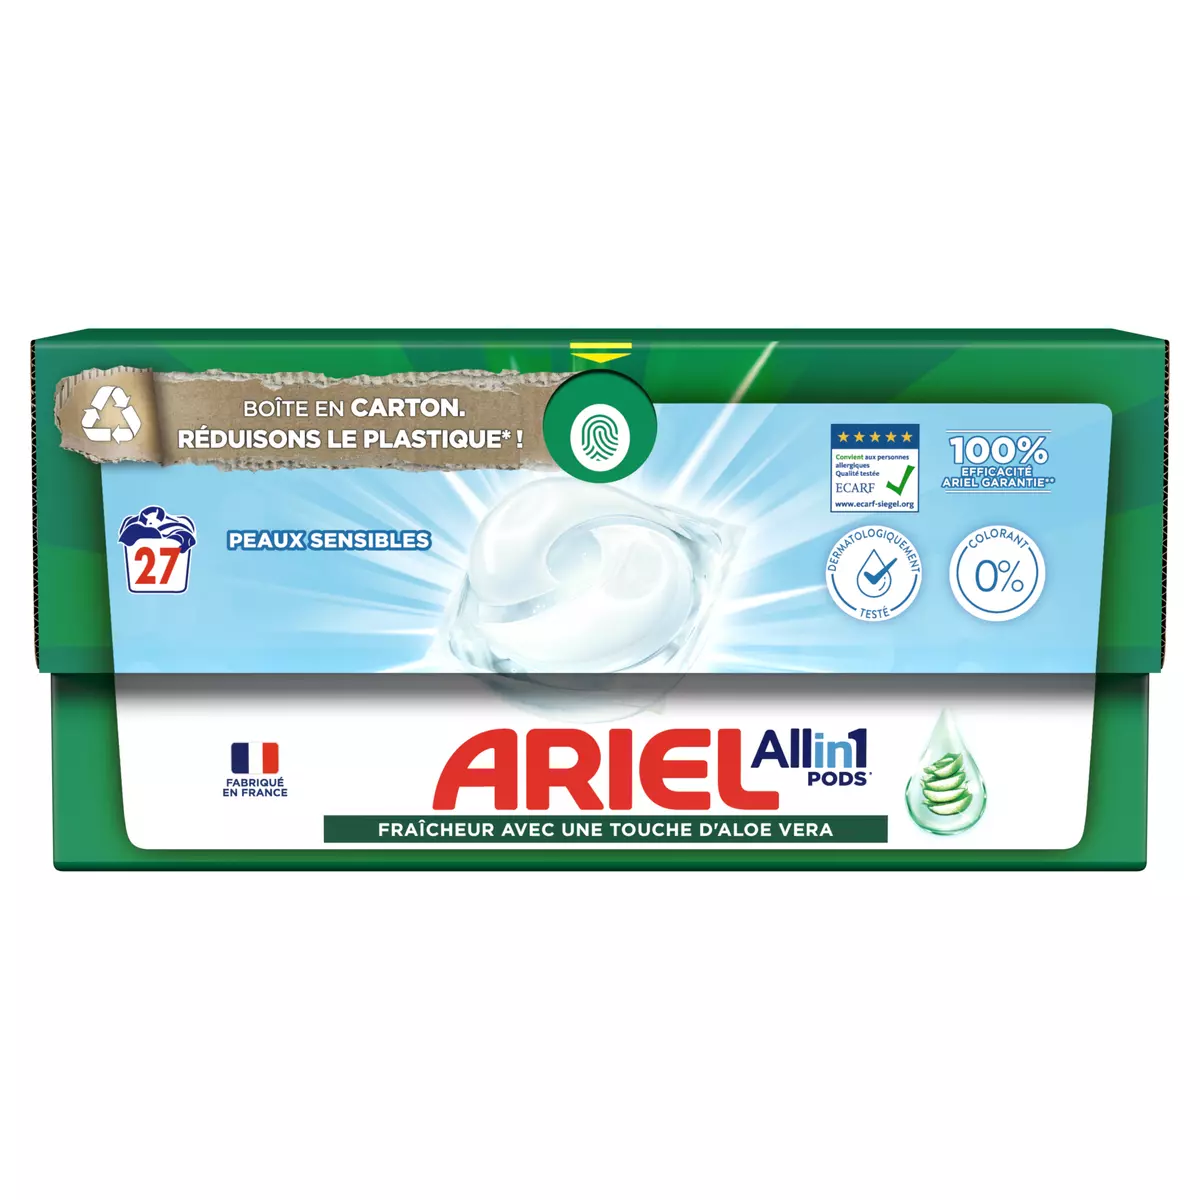 Ariel All-in-1 PODS, Lessive Liquide En Capsules…